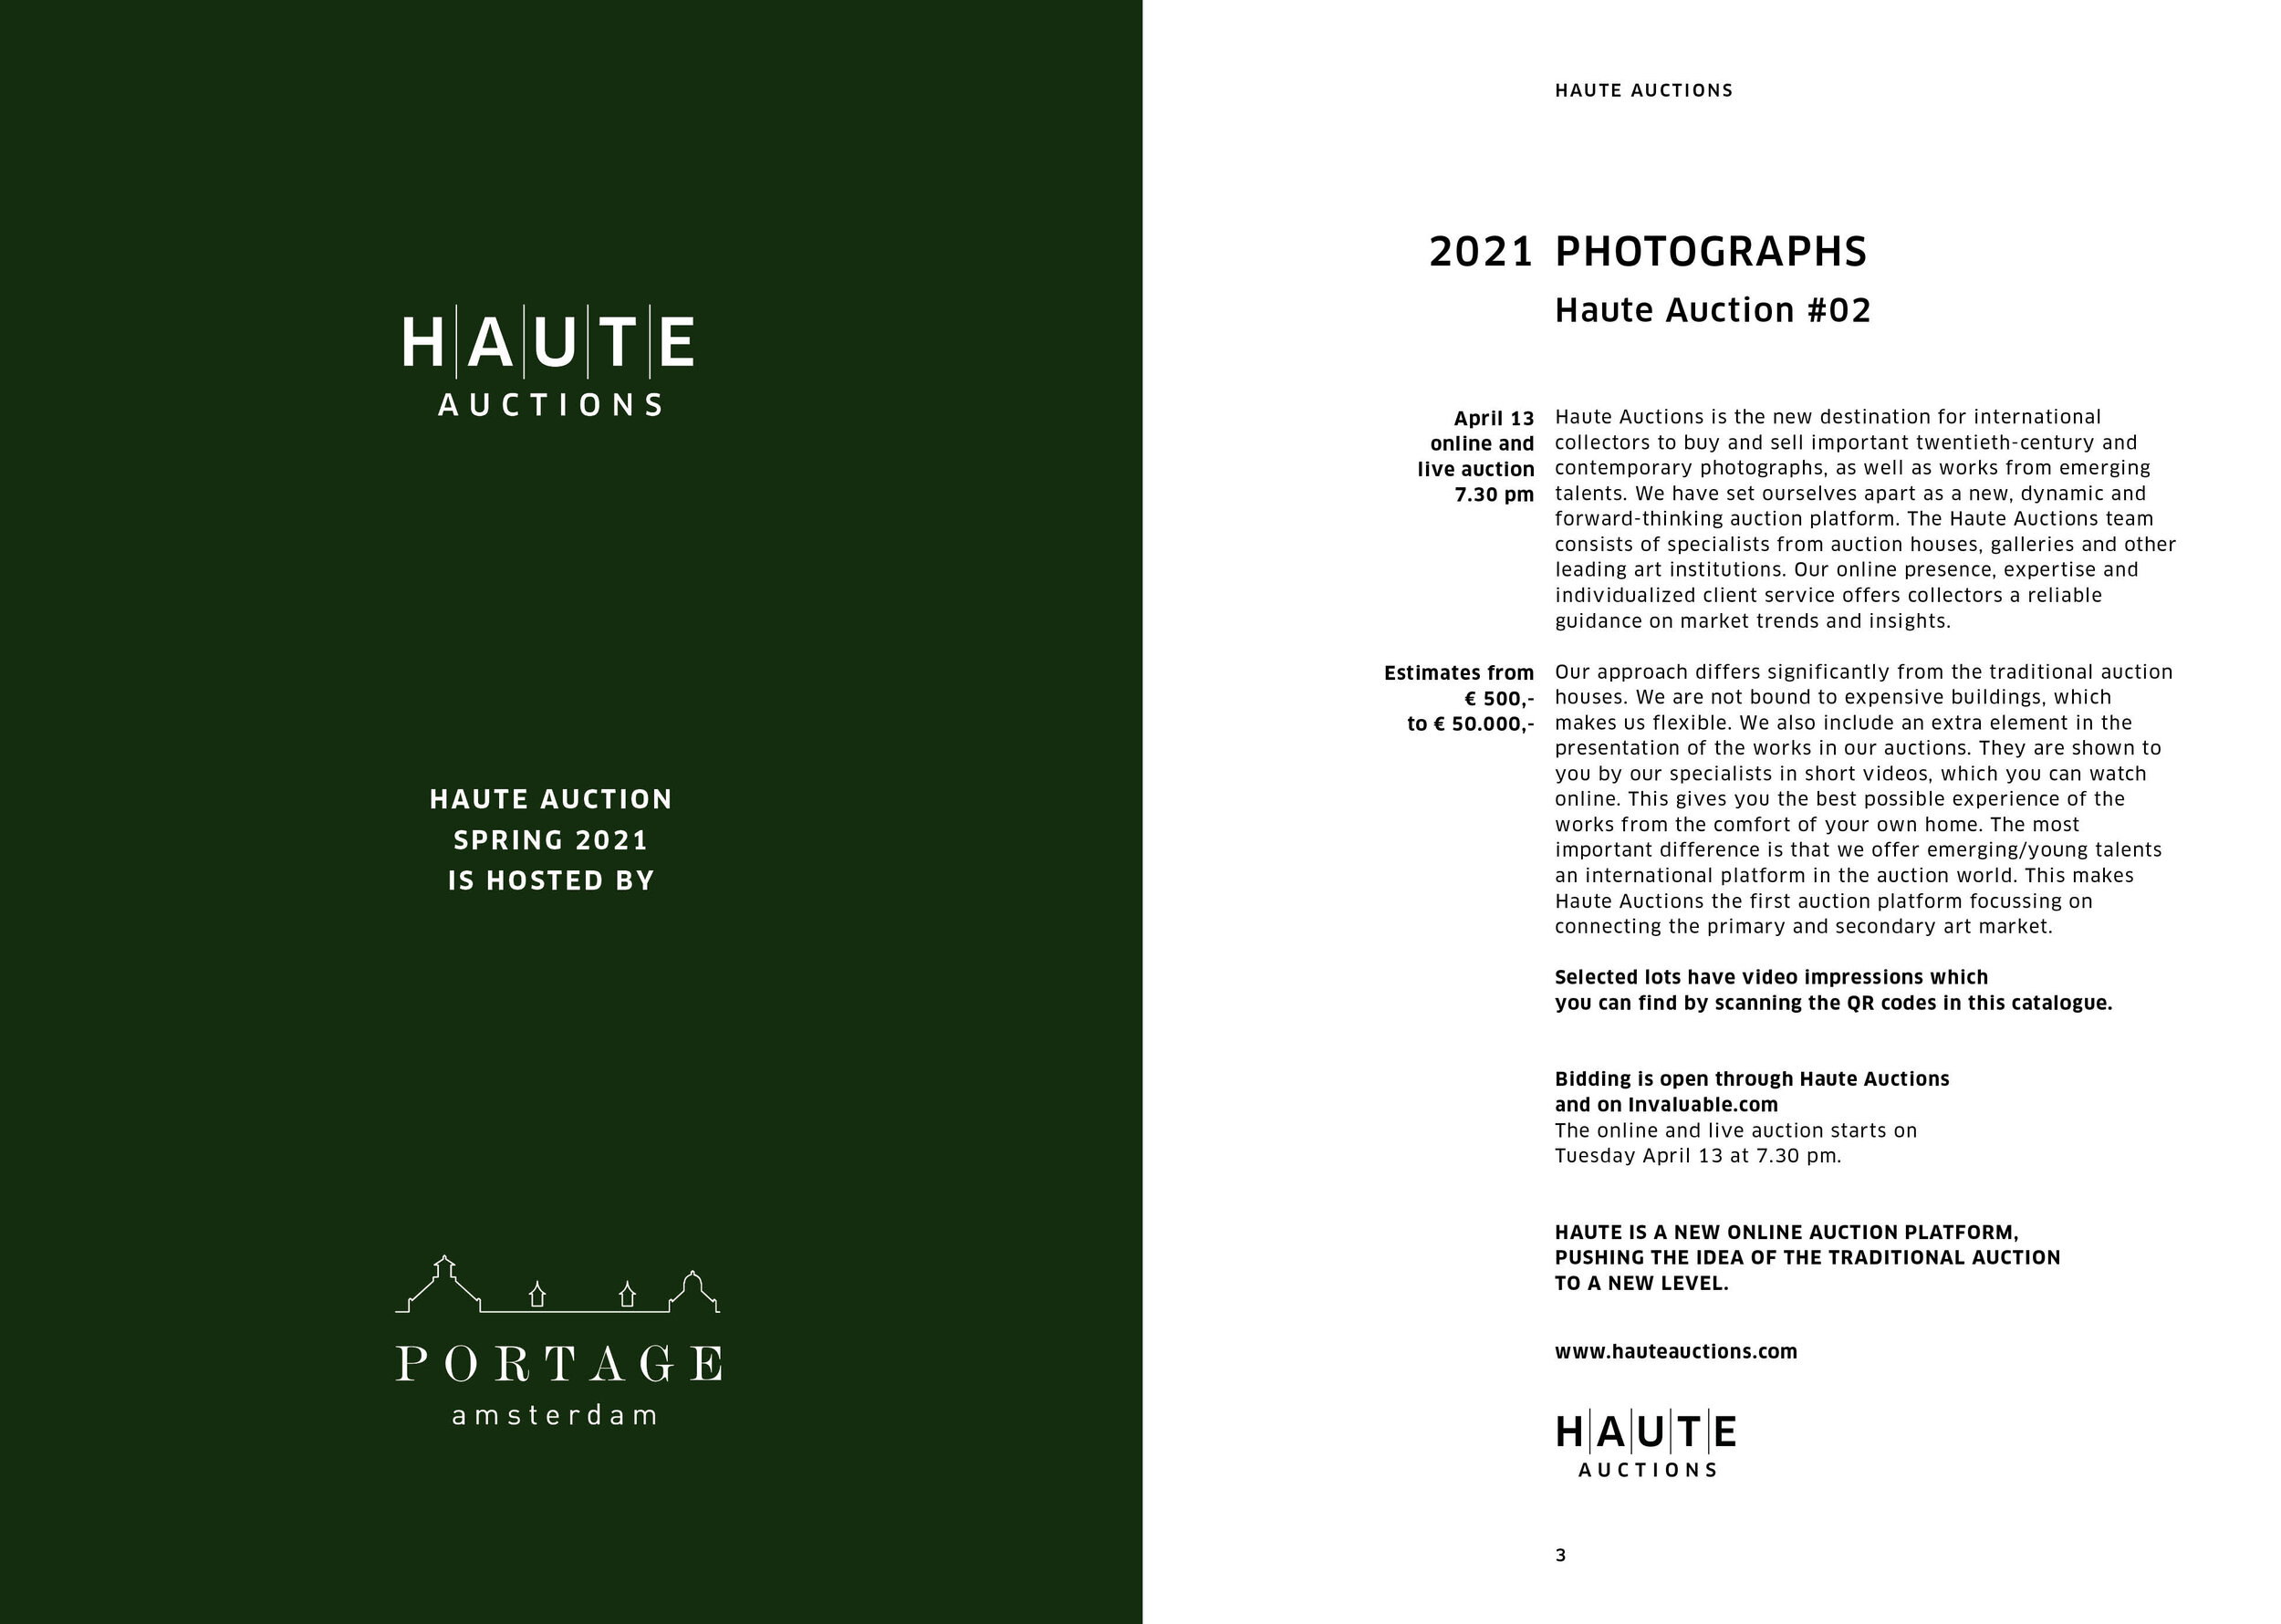 Haute Auction catalogue design def2.jpg